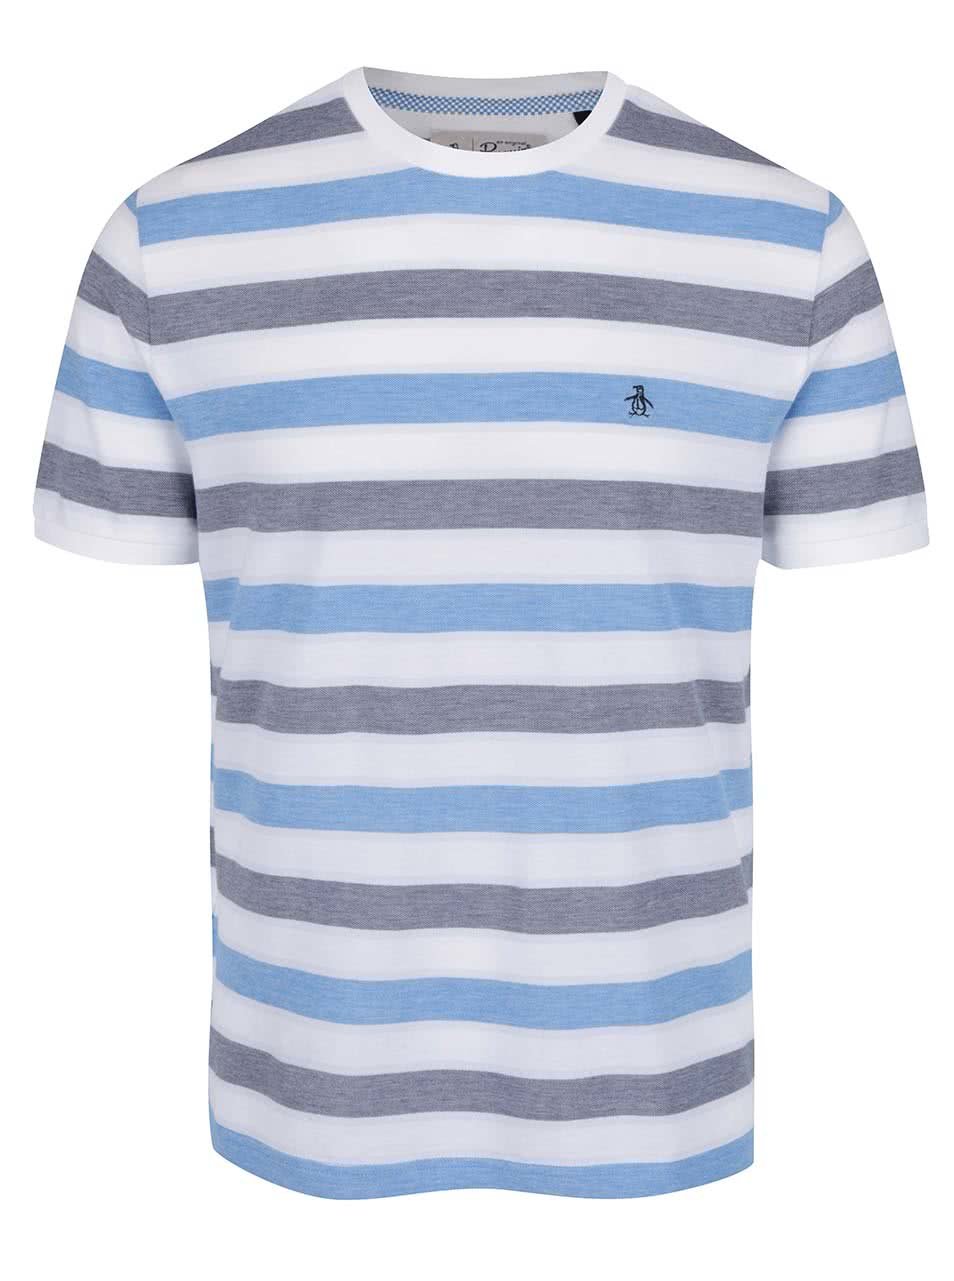 Modro-bílé pruhované triko Original Penguin Birdseye